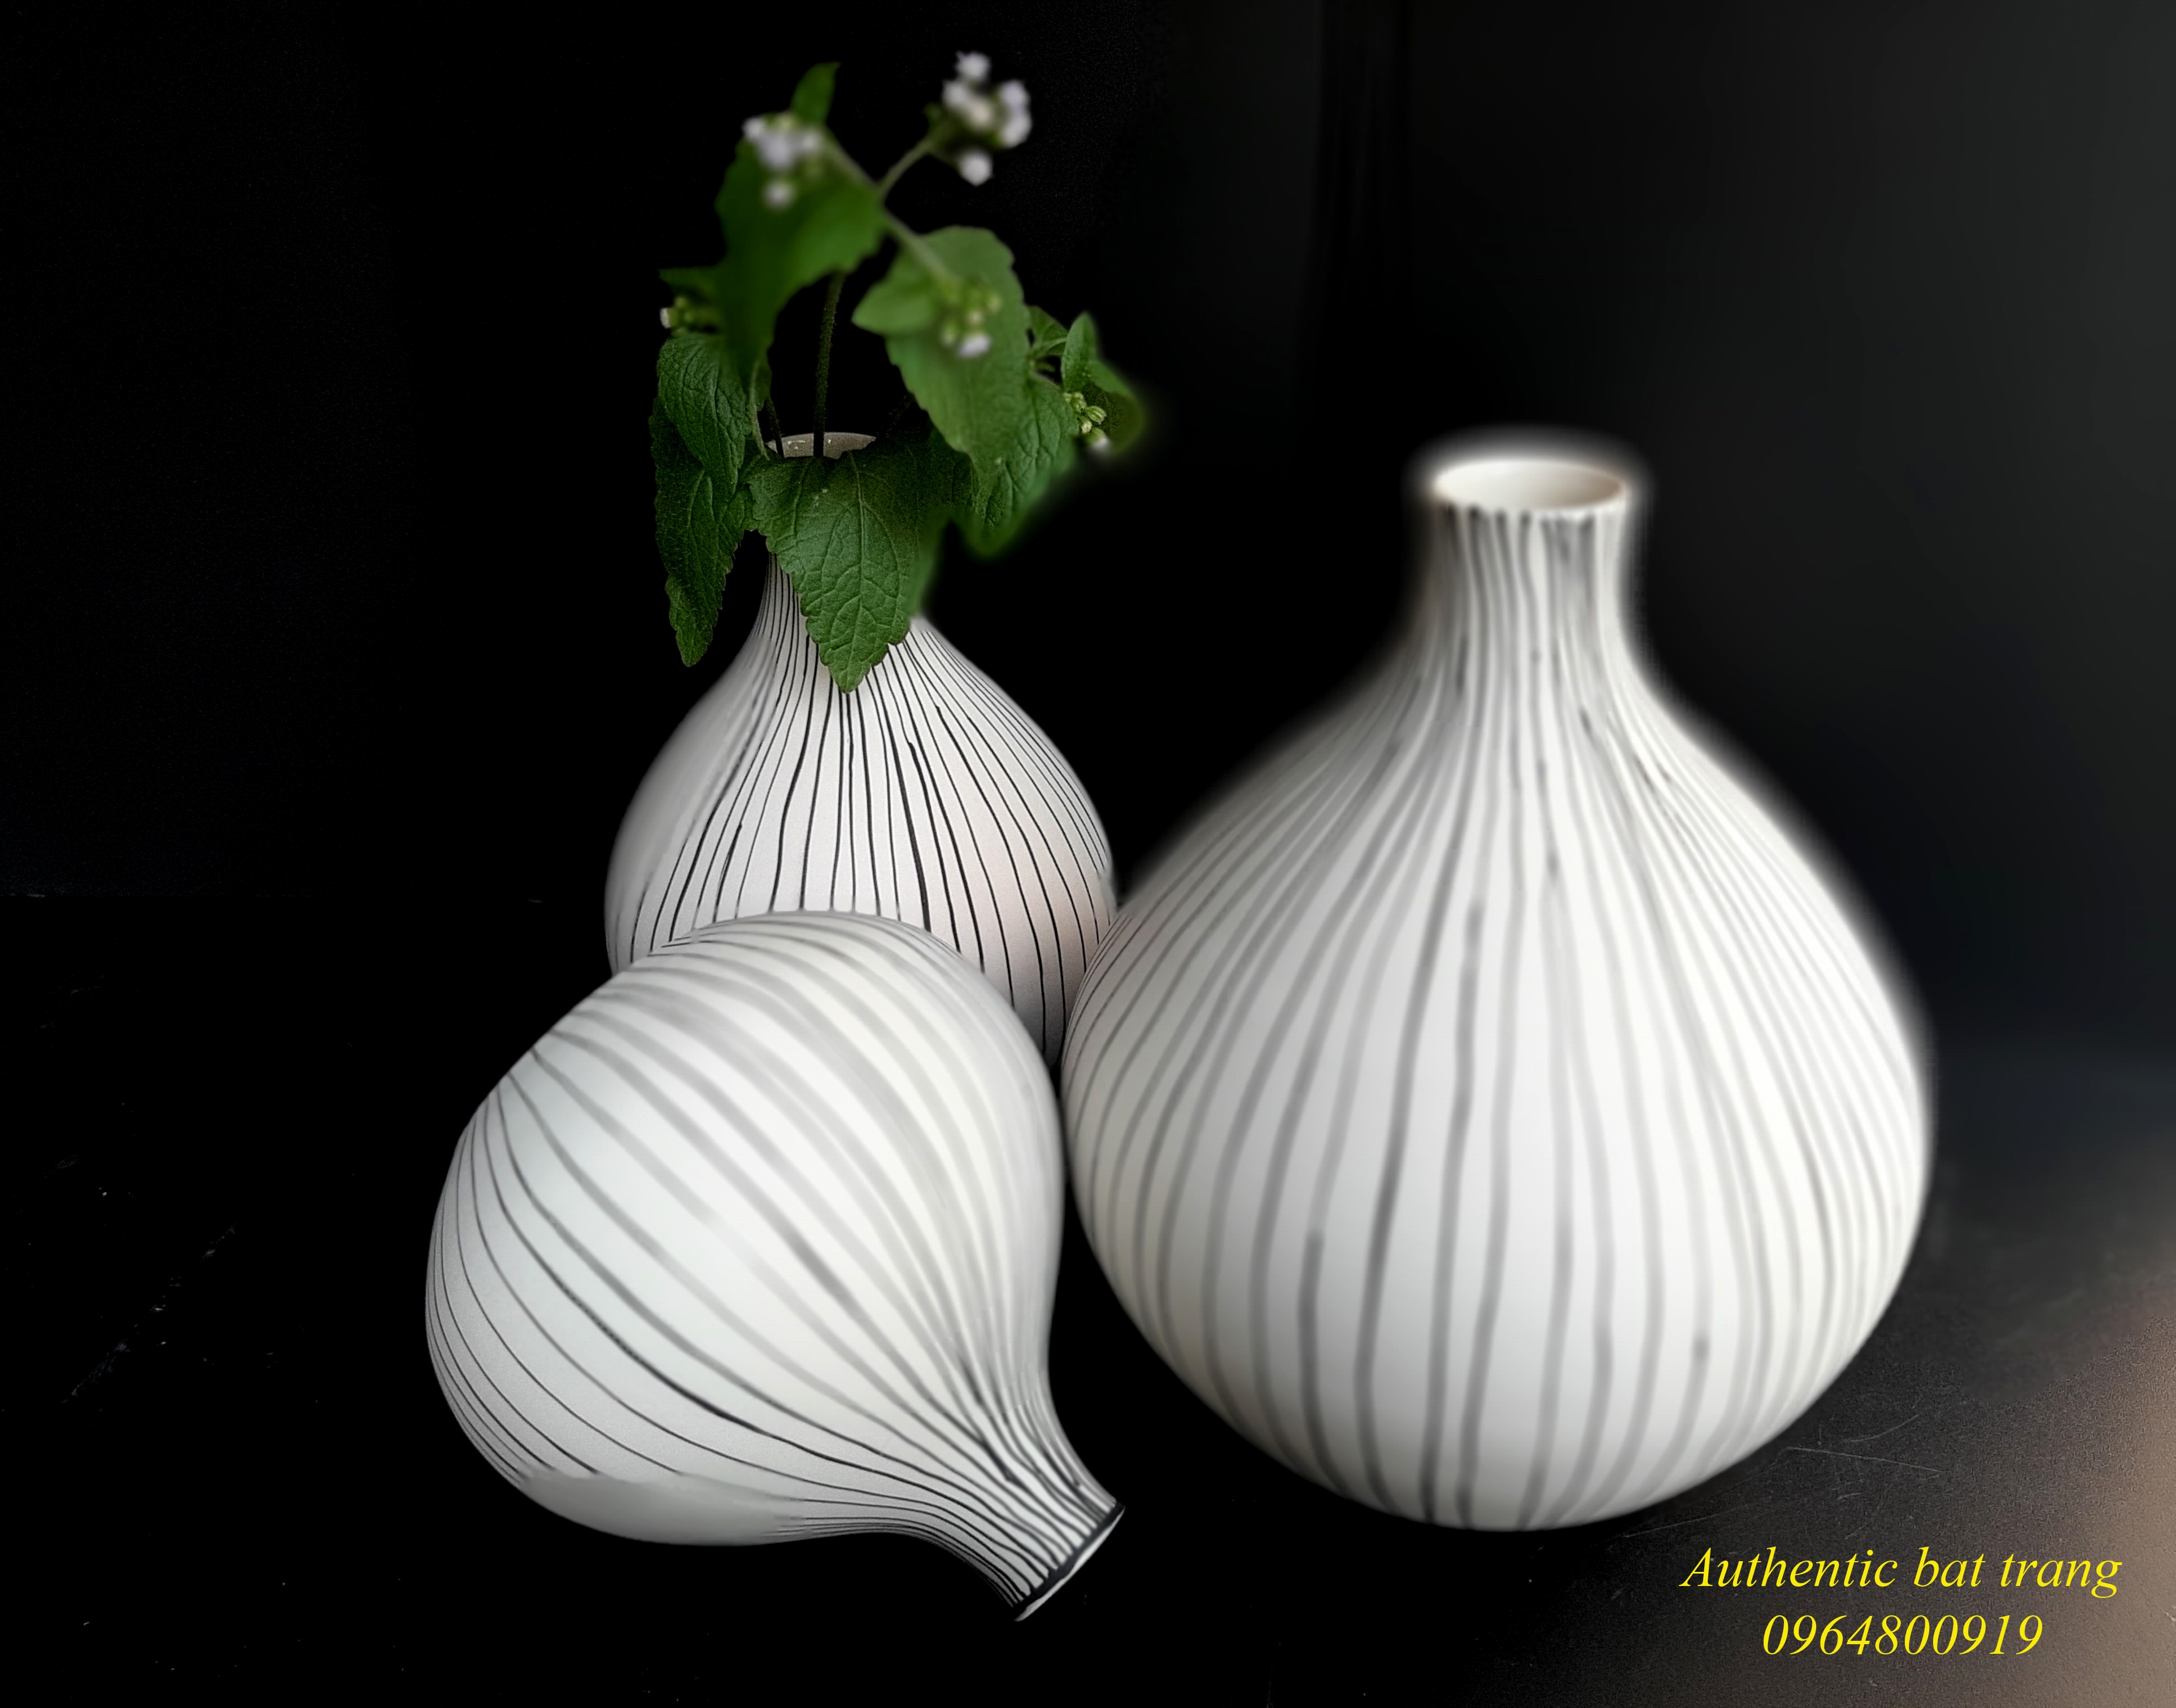 Decor vases set/ Bộ bình gốm kẻ sọc, trang trí nhà cửa, sản xuất tại xưởng gốm sứ Authentic bat trang